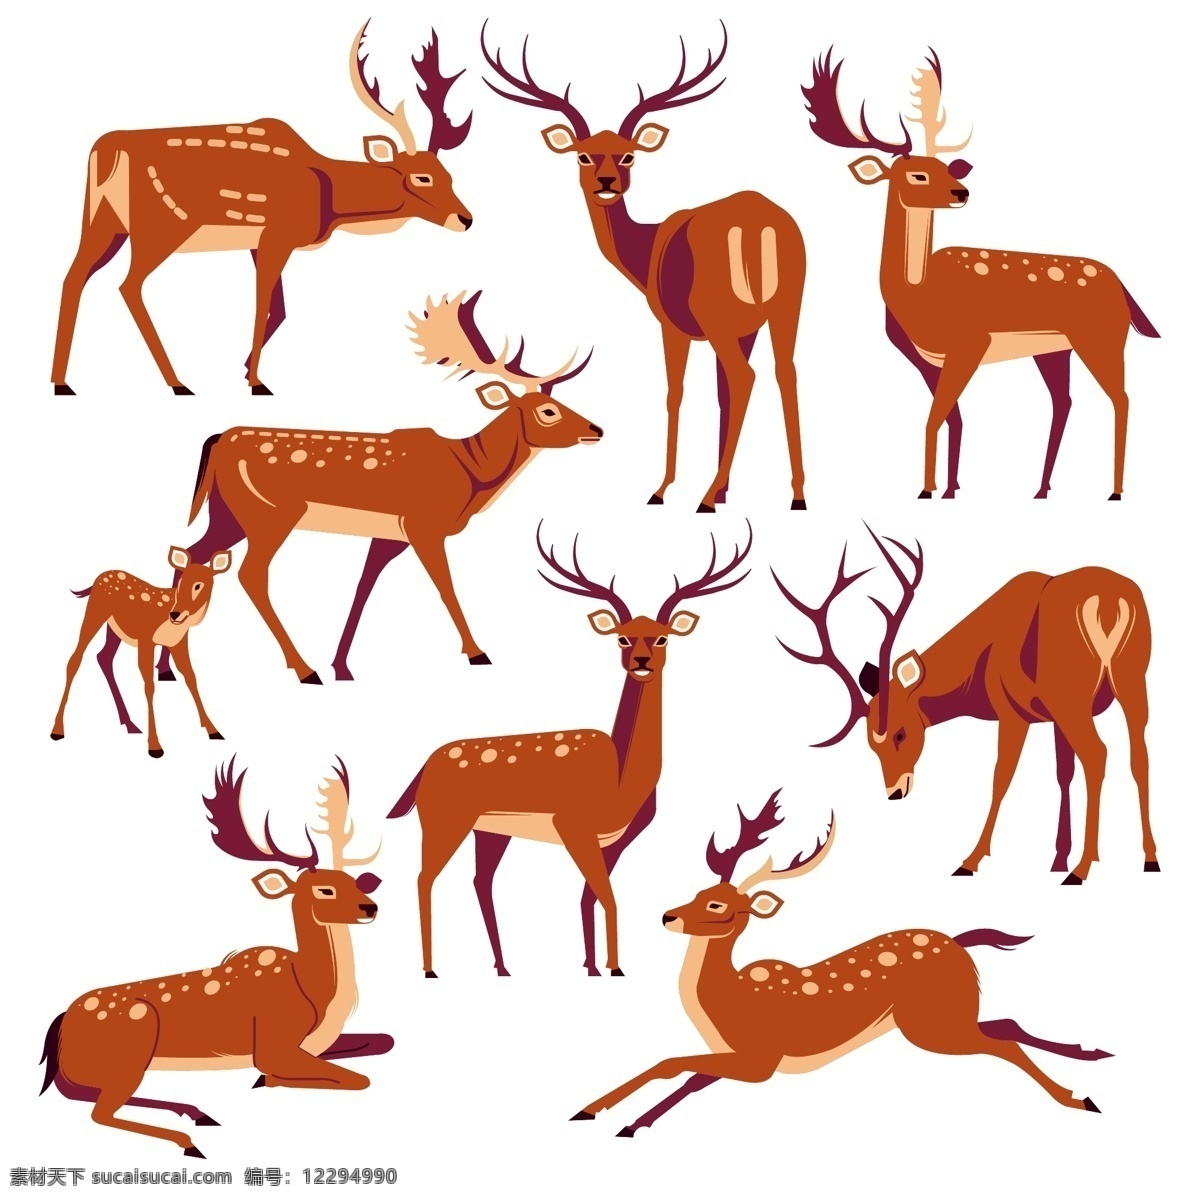 款 创意 鹿 矢量 9款创意鹿 设计矢量素材 梅花鹿 矢量图 ai格式 生物世界 野生动物